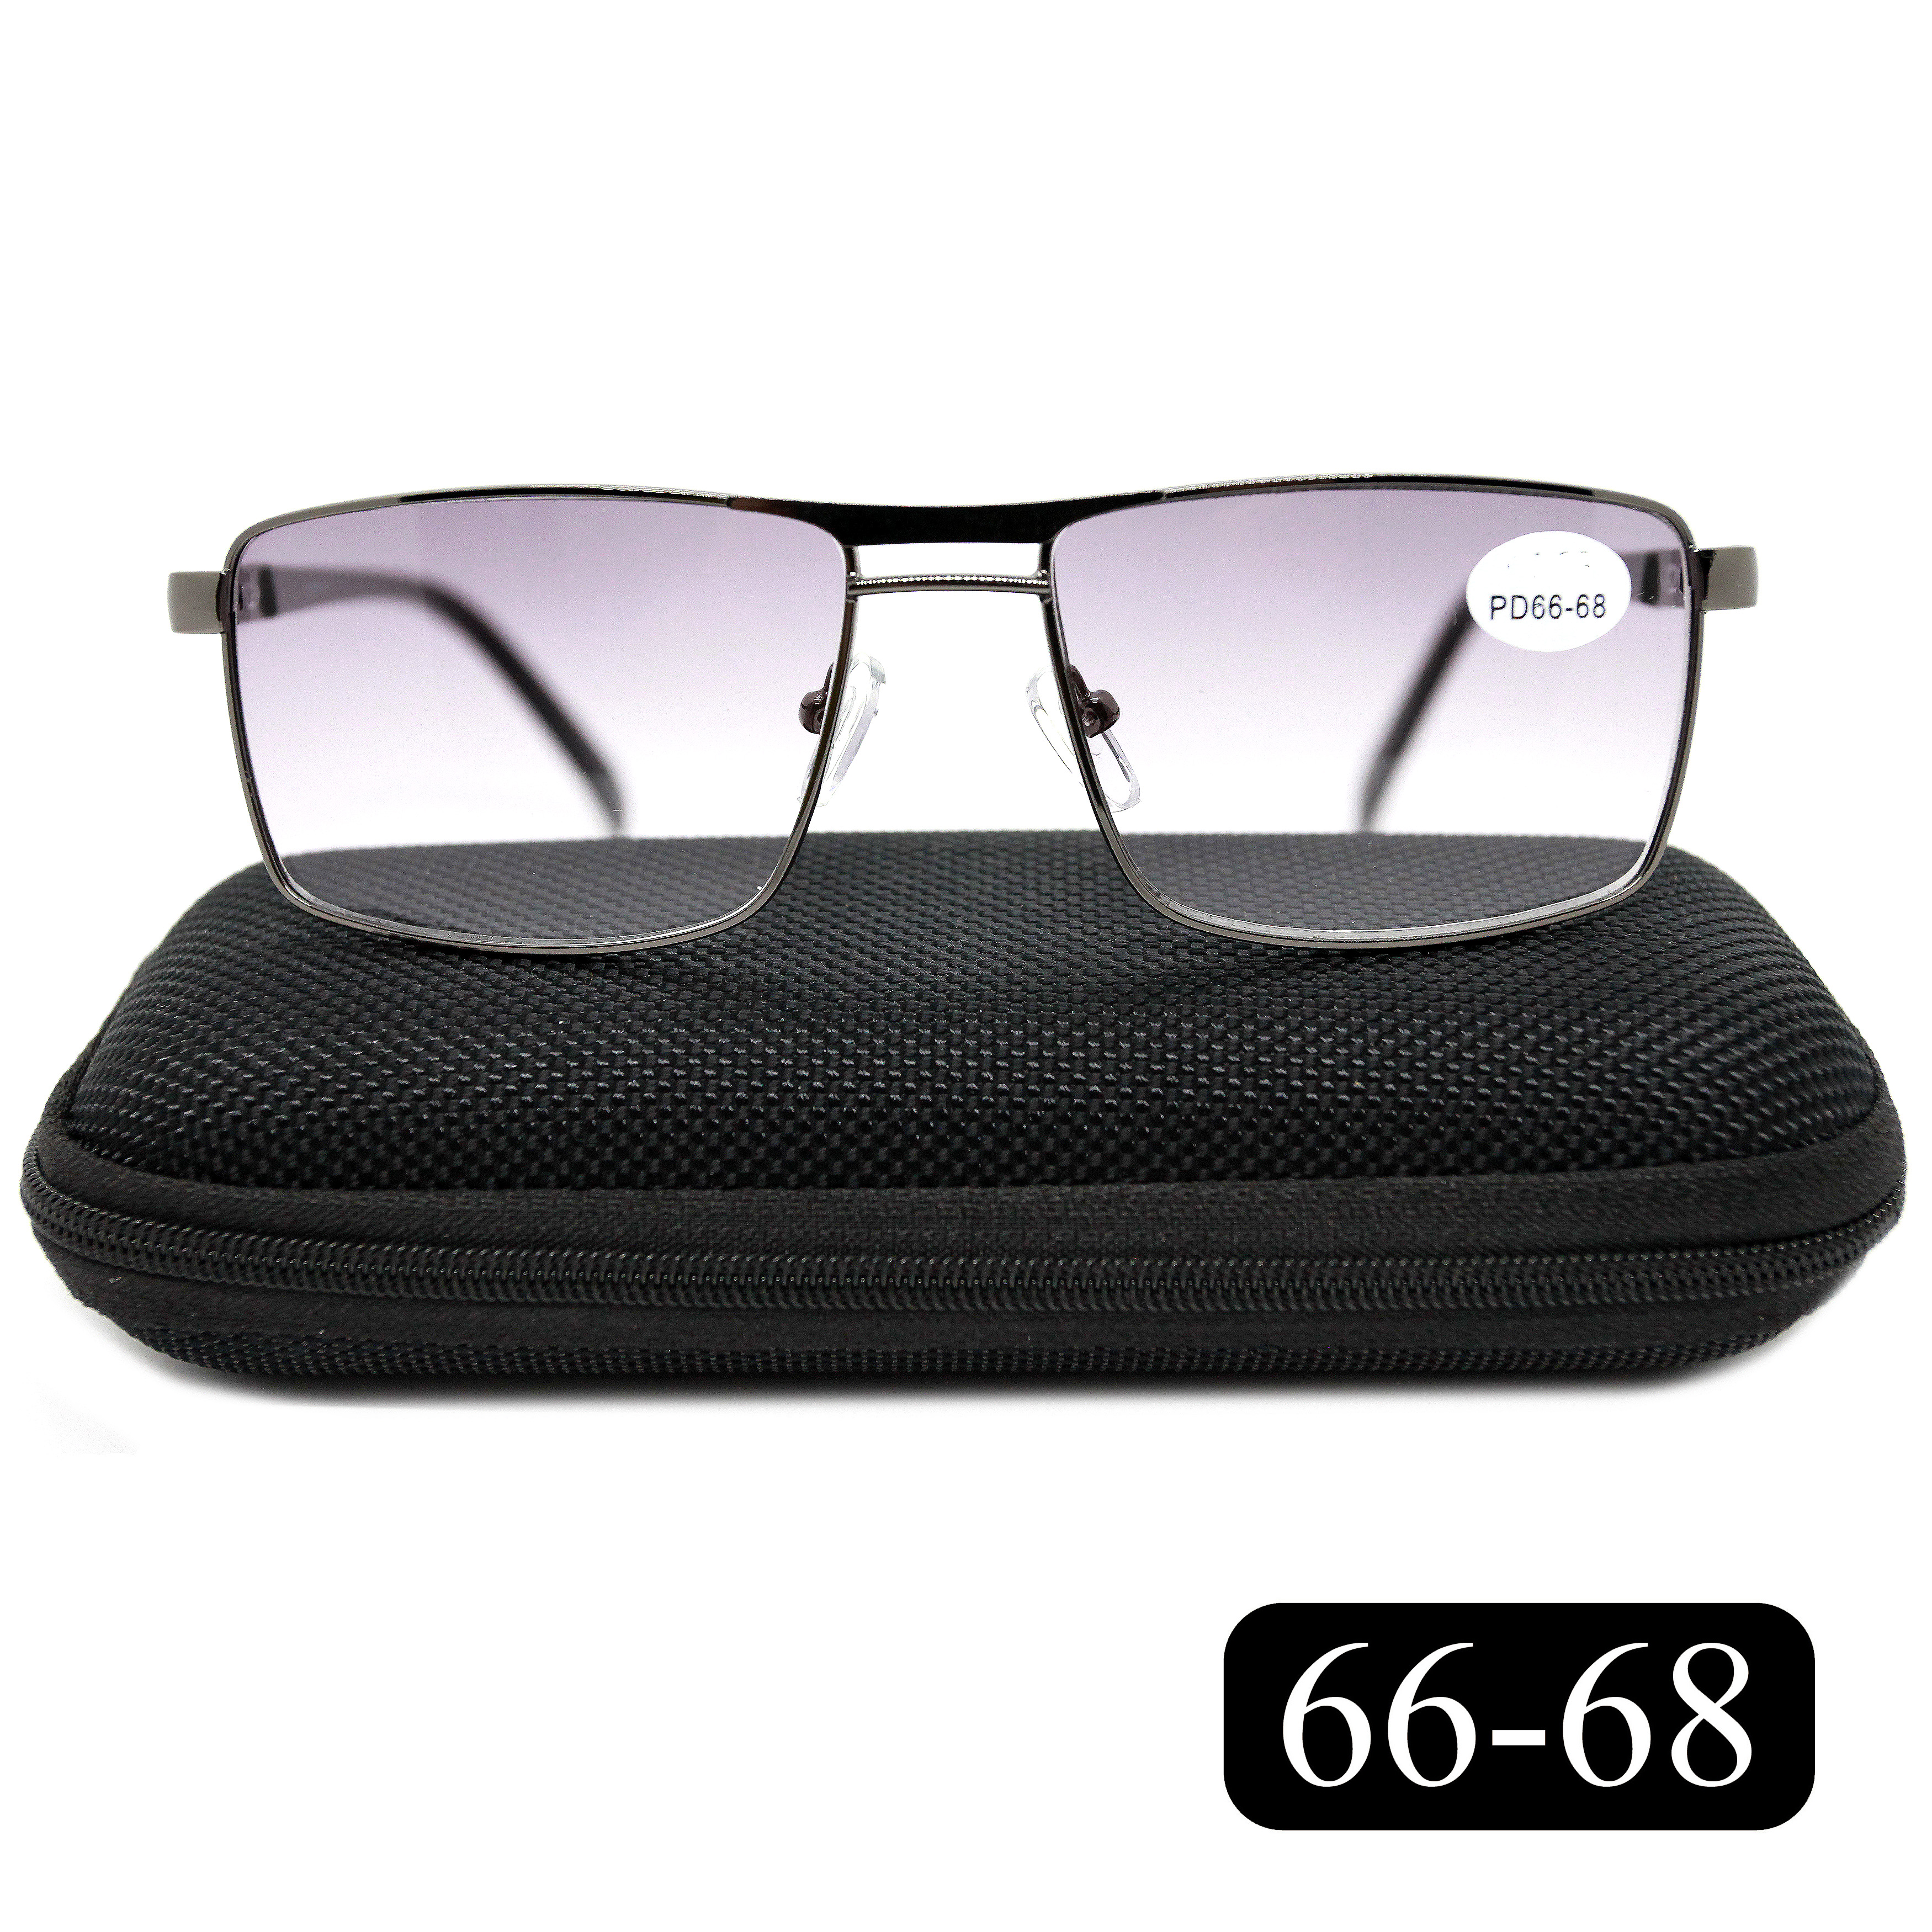 Готовые очки Salivio 5009 +2,75, c футляром, с тонировкой, черный, РЦ 66-68